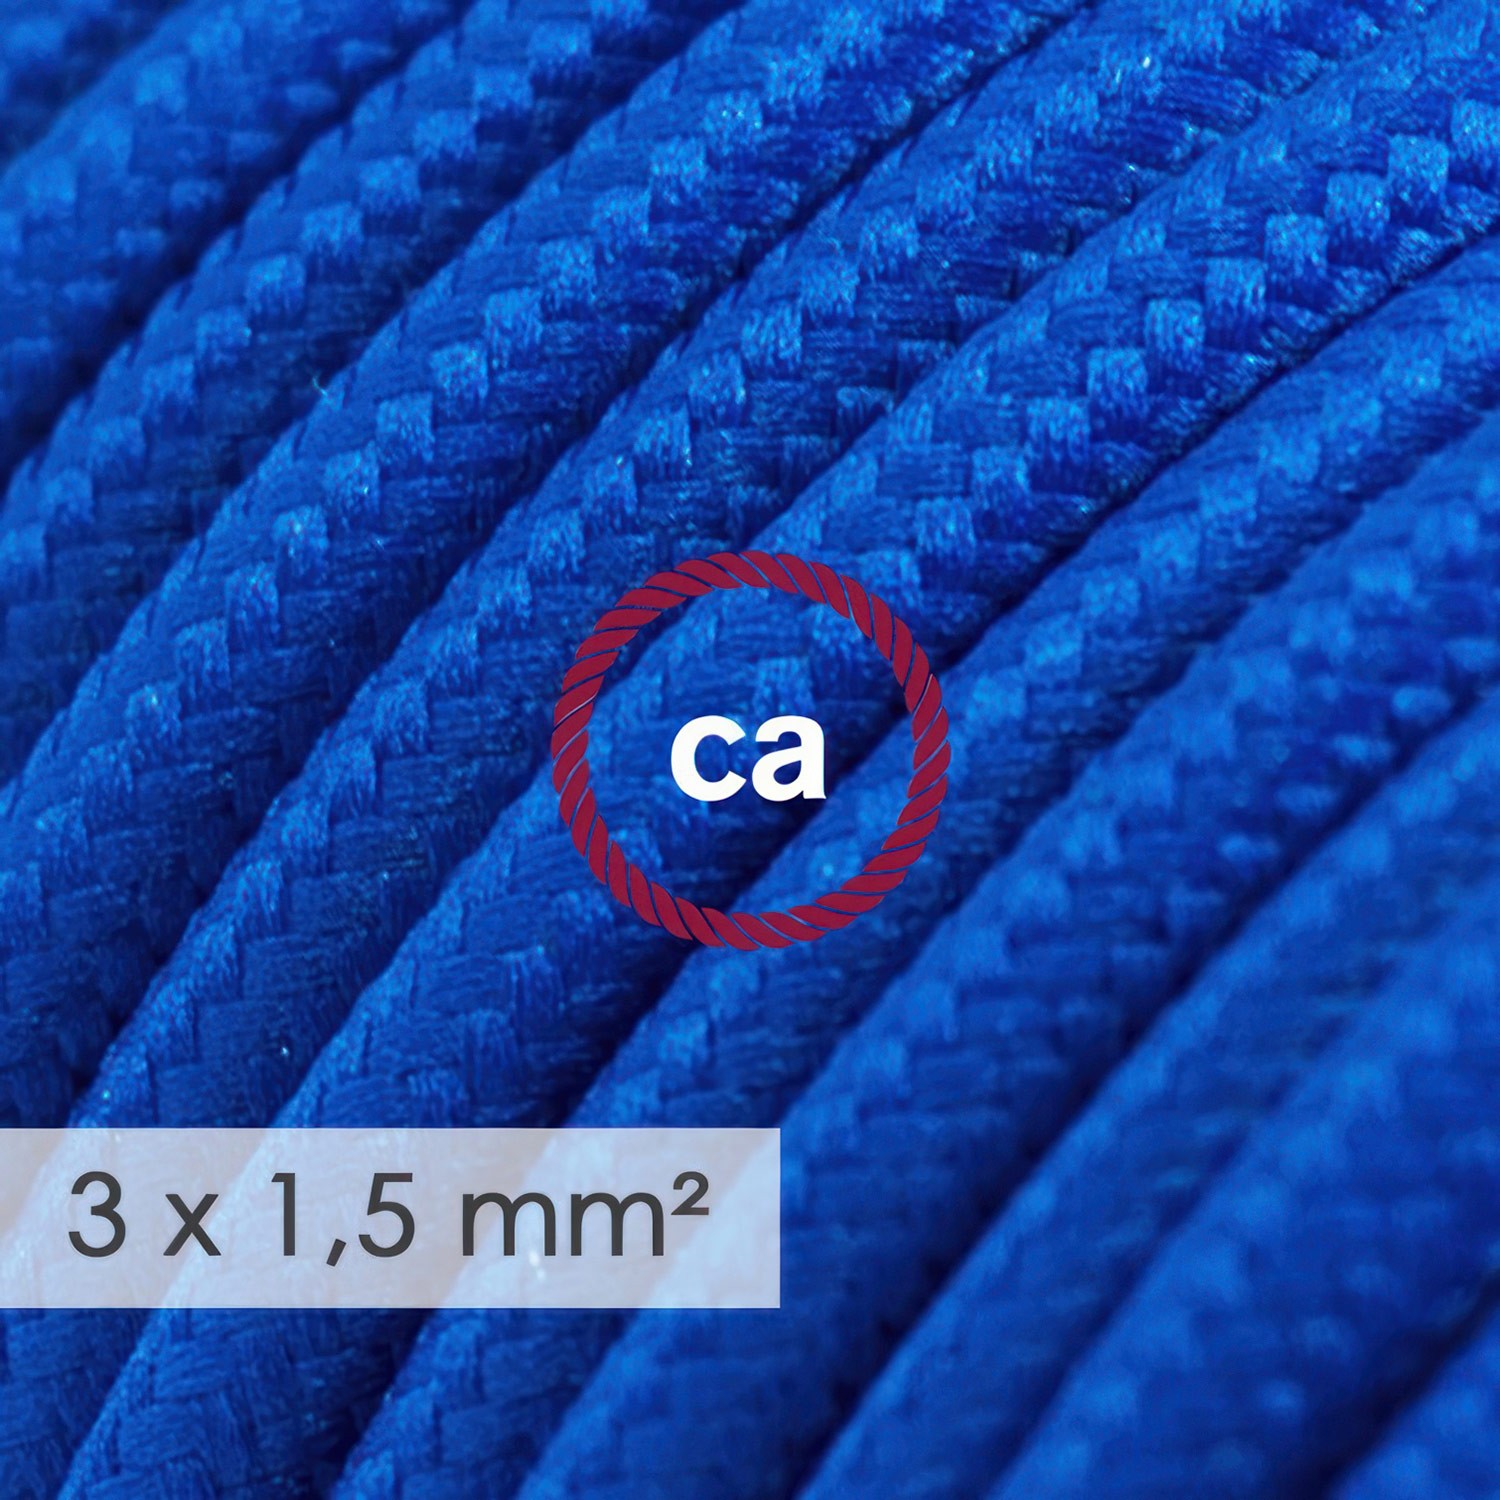 Multienchufe francés con cable en tejido efecto seda Azul RM12 y clavija Schuko con anillo comfort